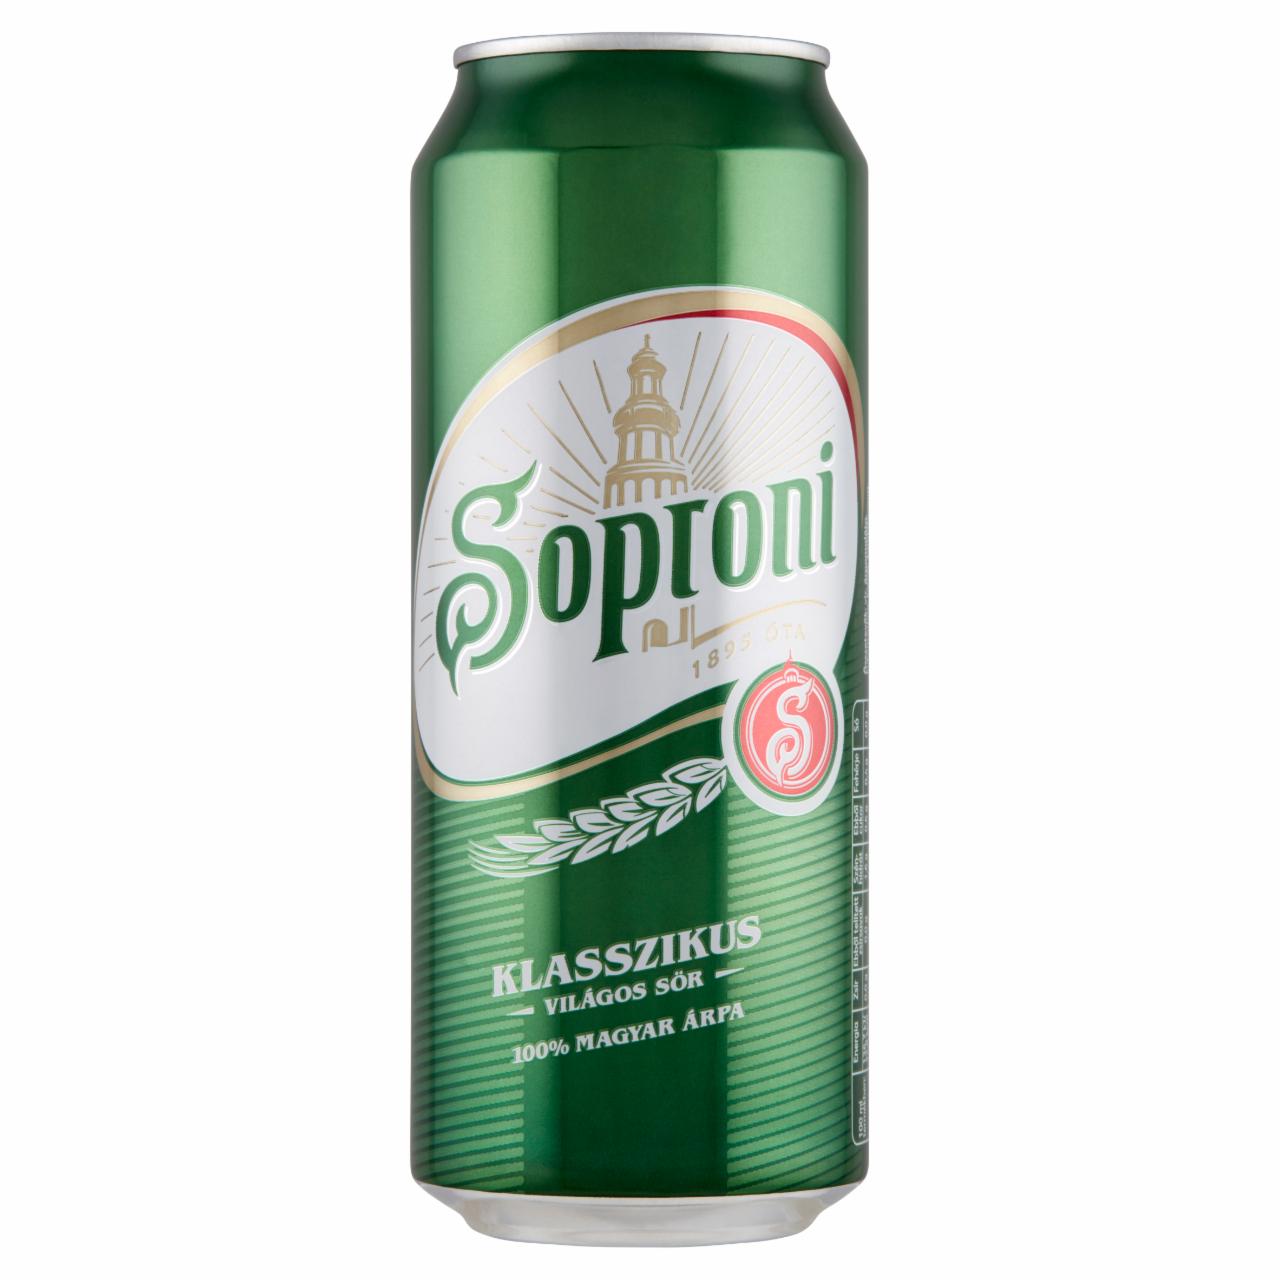 Képek - Soproni Klasszikus világos sör 4,5%